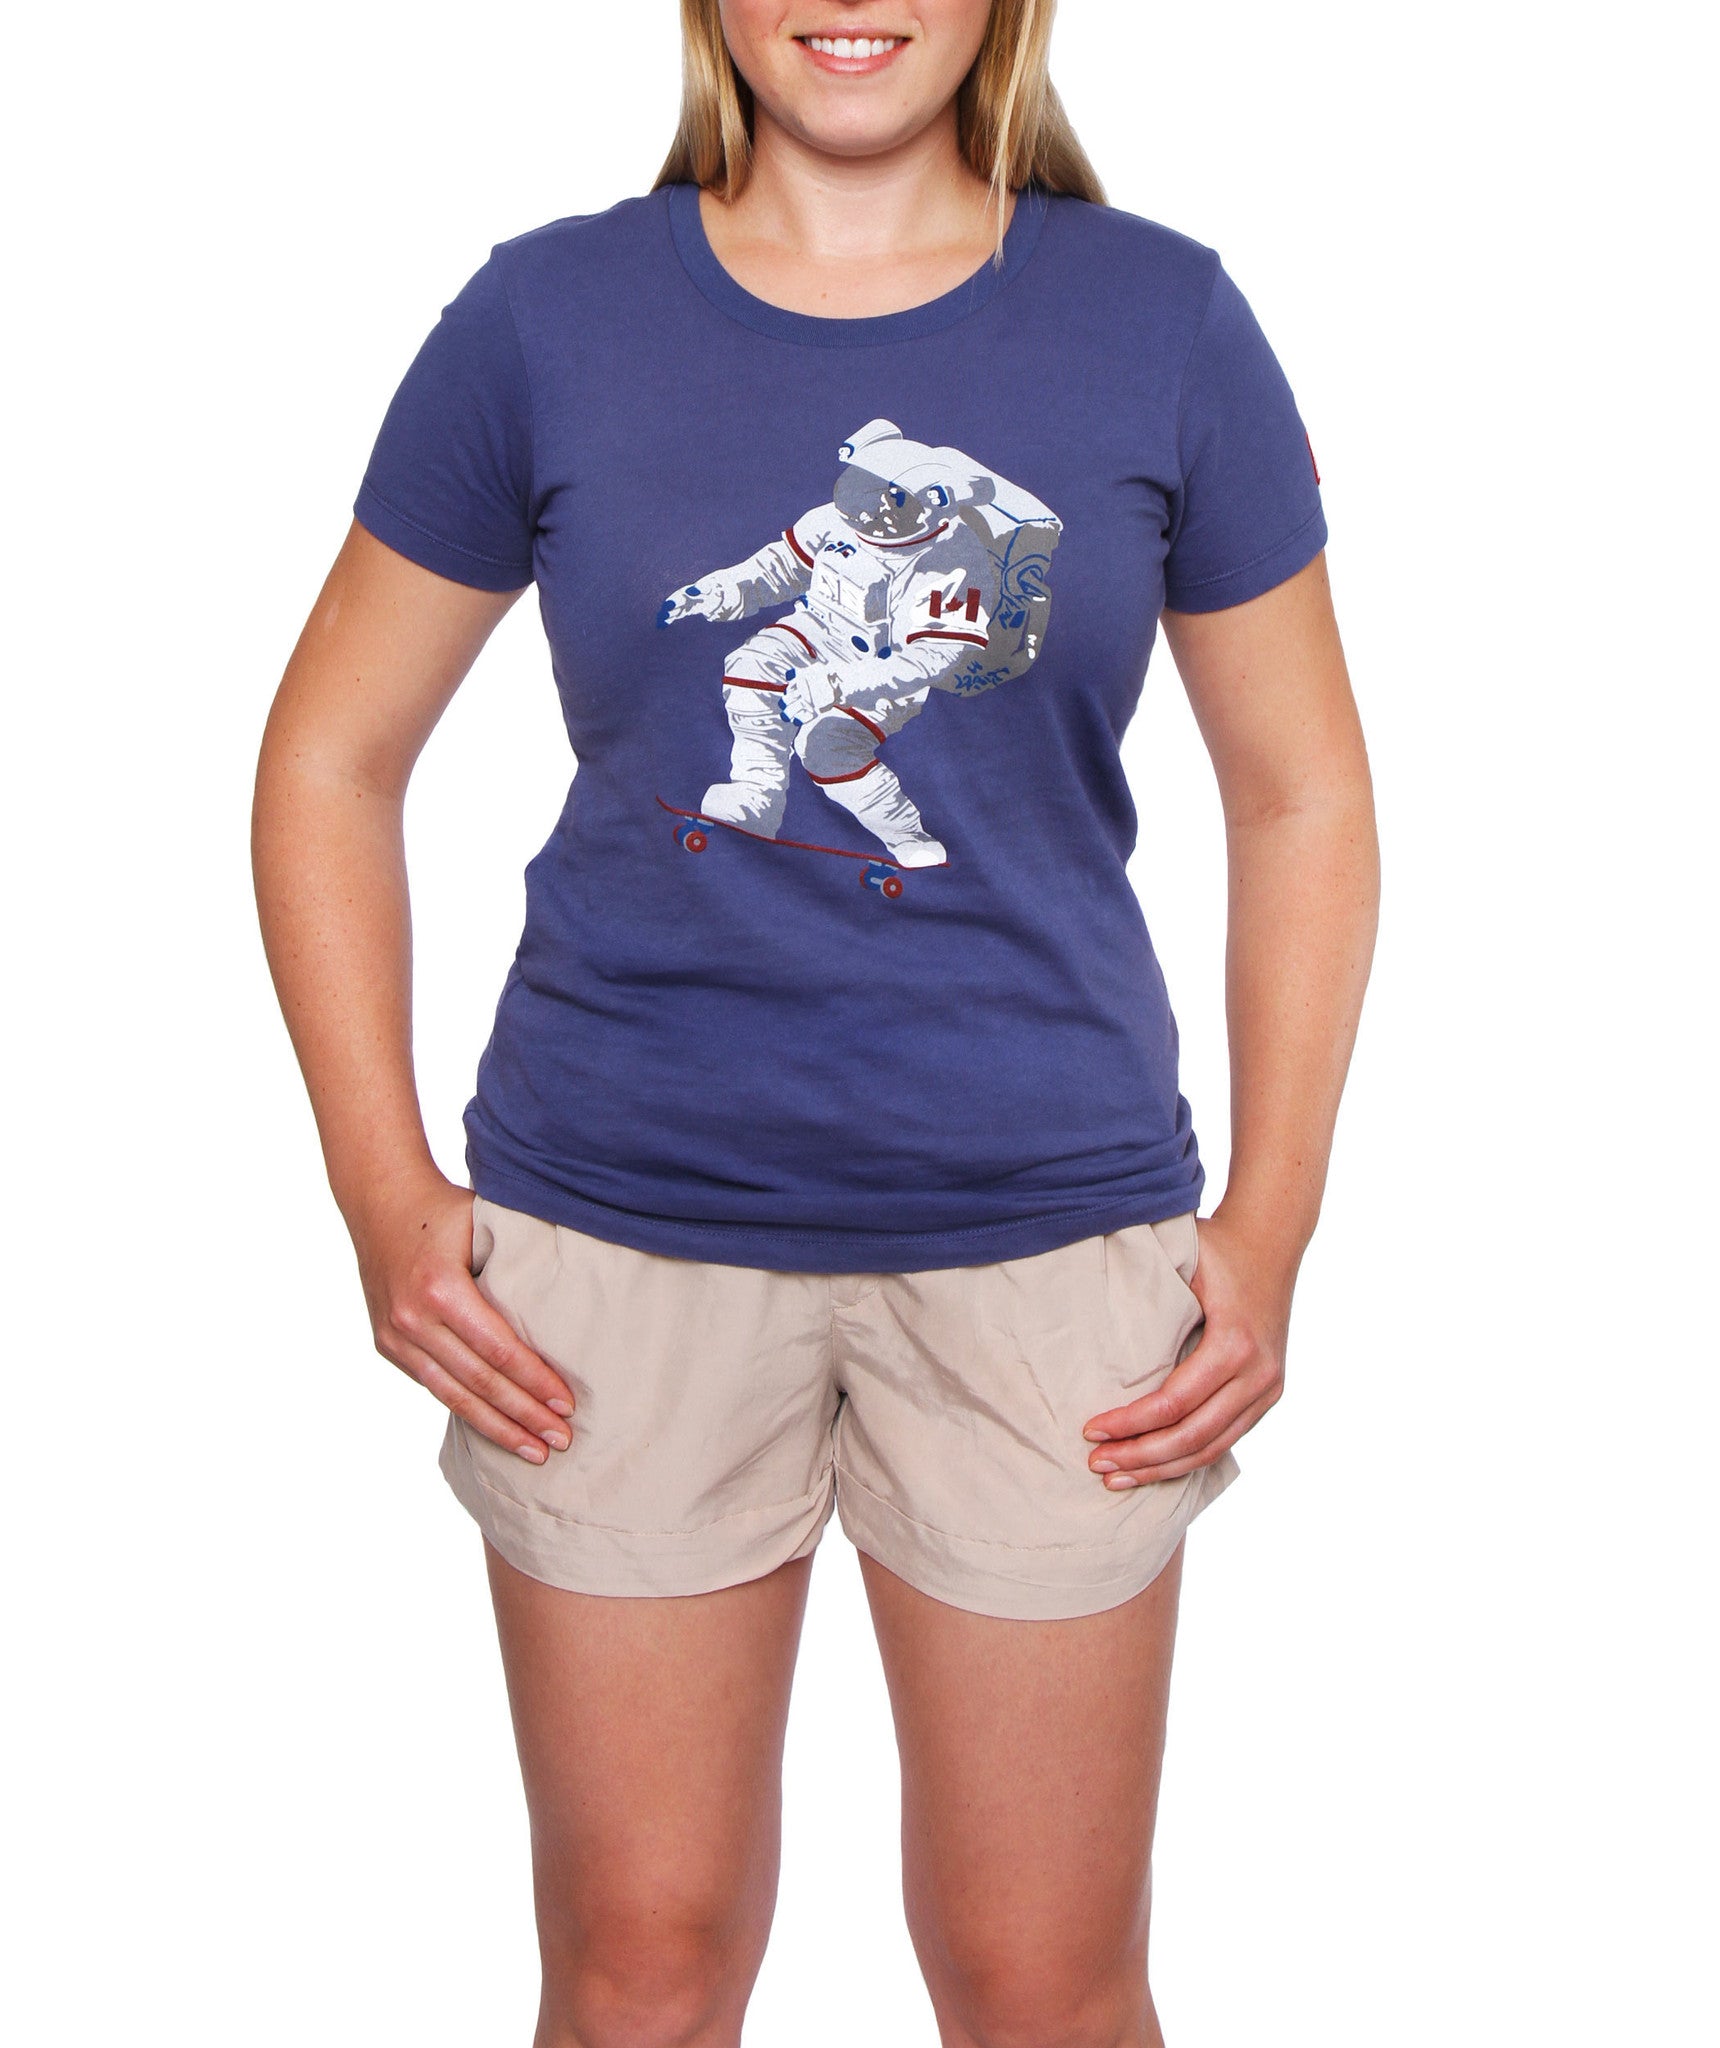 Chris Hadfield Skateboarding Astronaut Women's T-shirt | 60°N 95°W